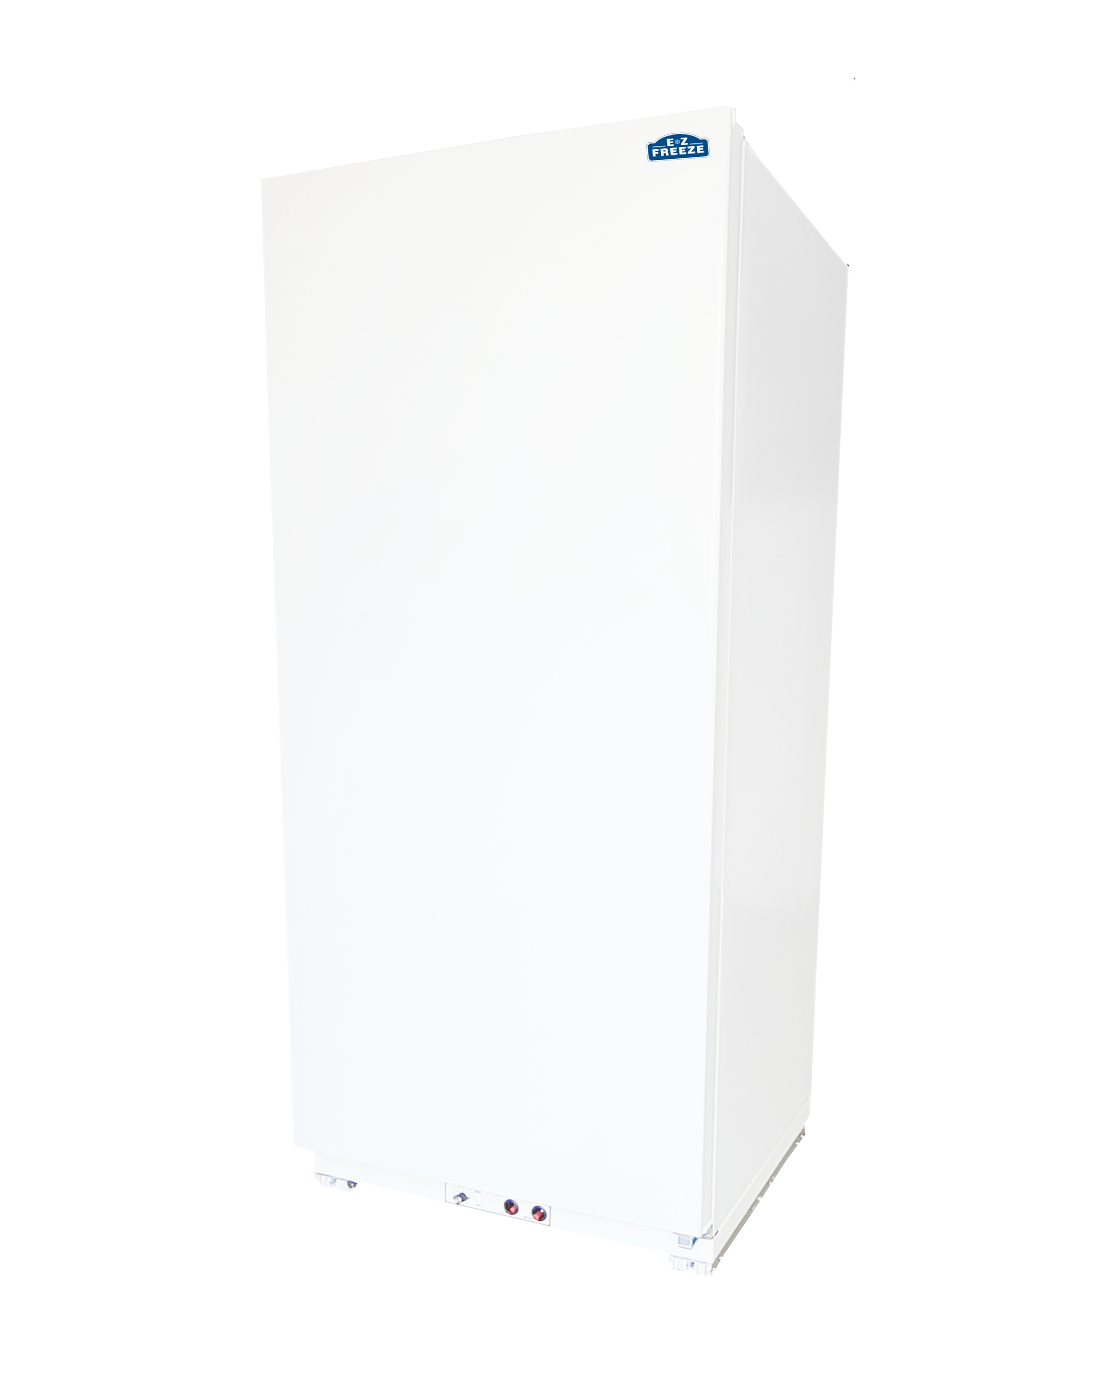 EZ Freeze Propane Refrigerator EZ Freeze 21 Cu. Ft. Total Propane Gas Refrigerator EZ-21R